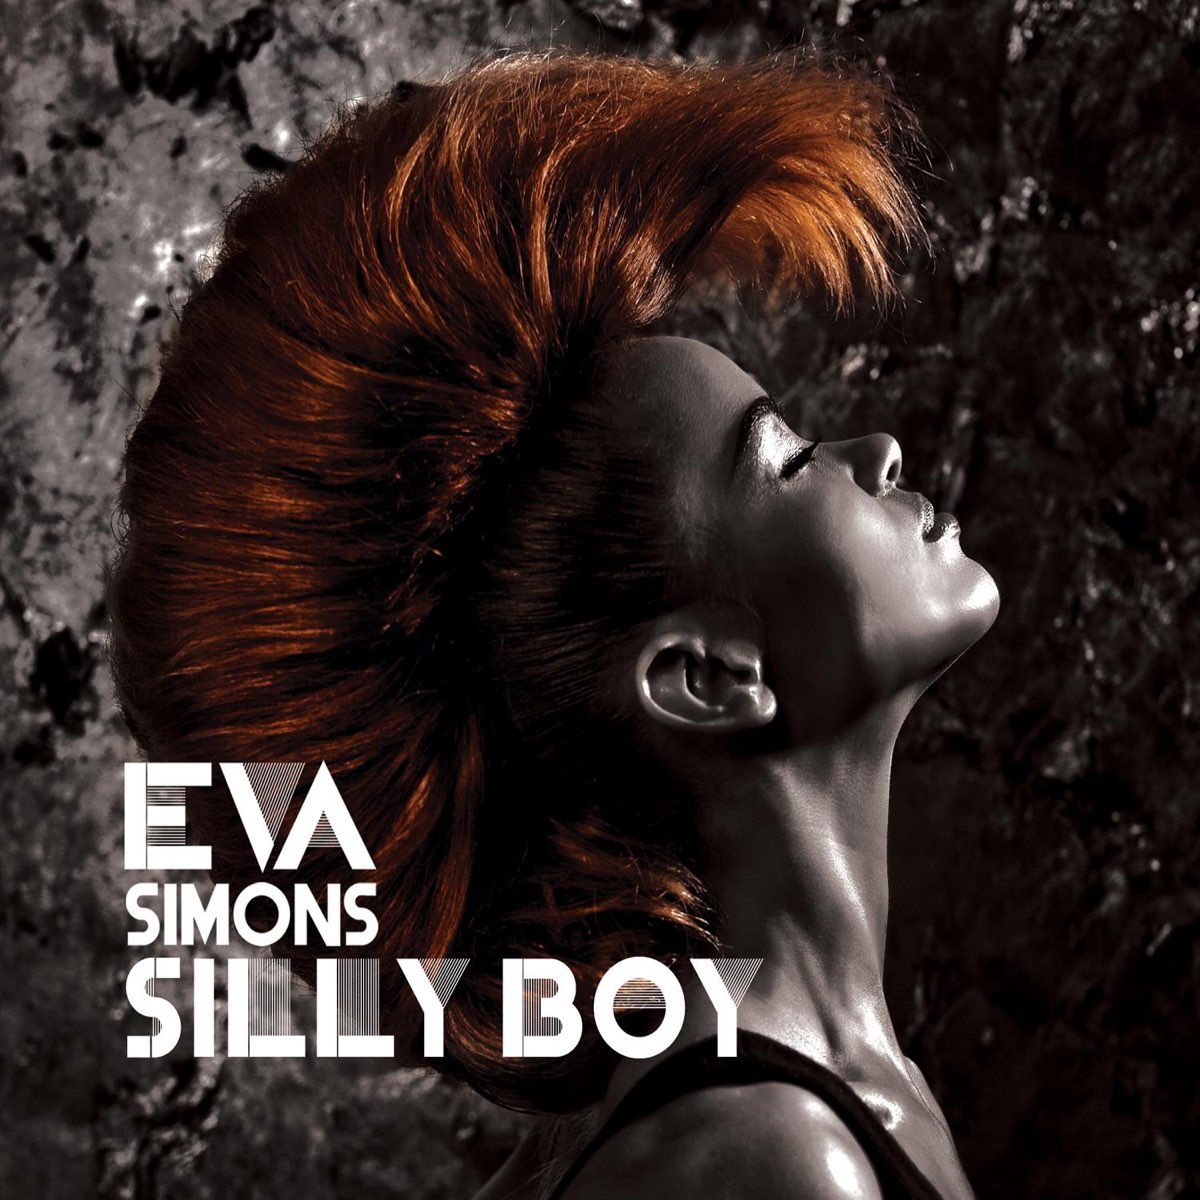 Eva Simons Silly Boy cover artwork